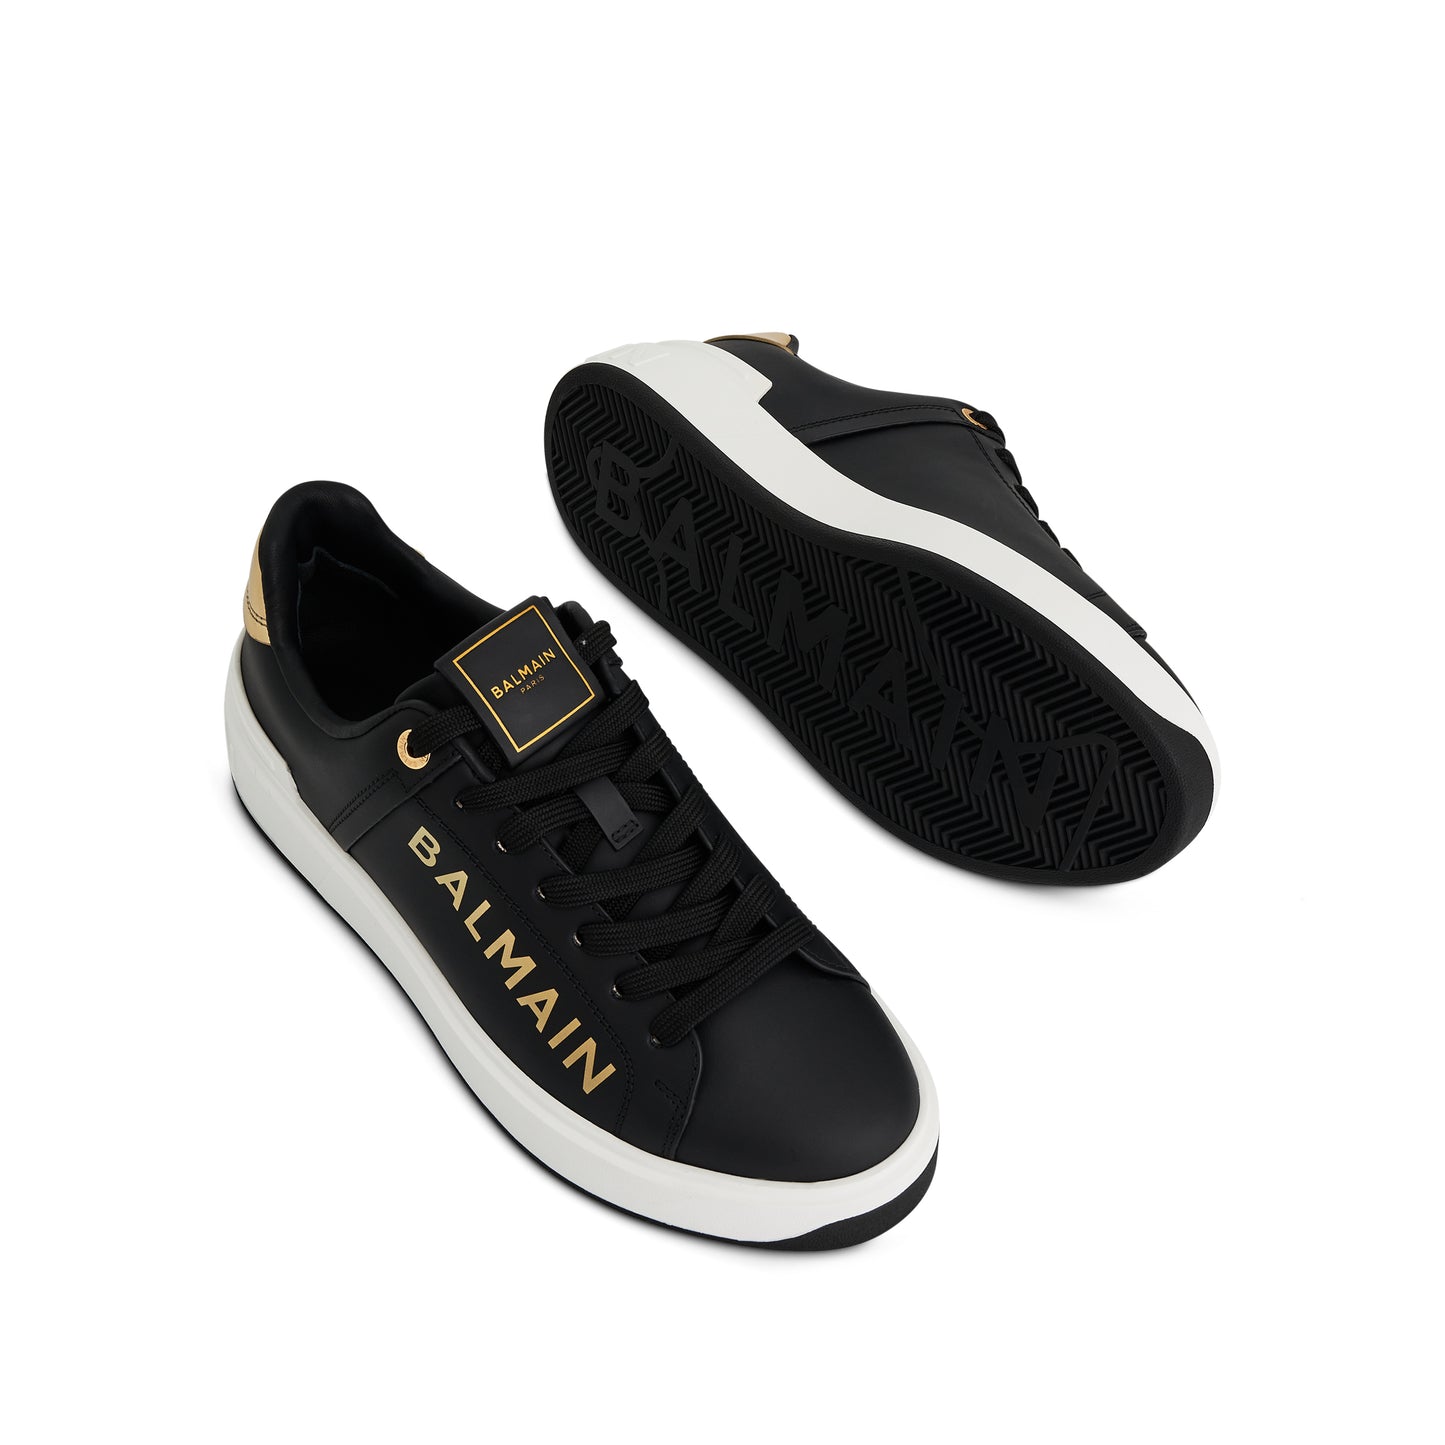 B-Court Low Sneaker in Black/Gold